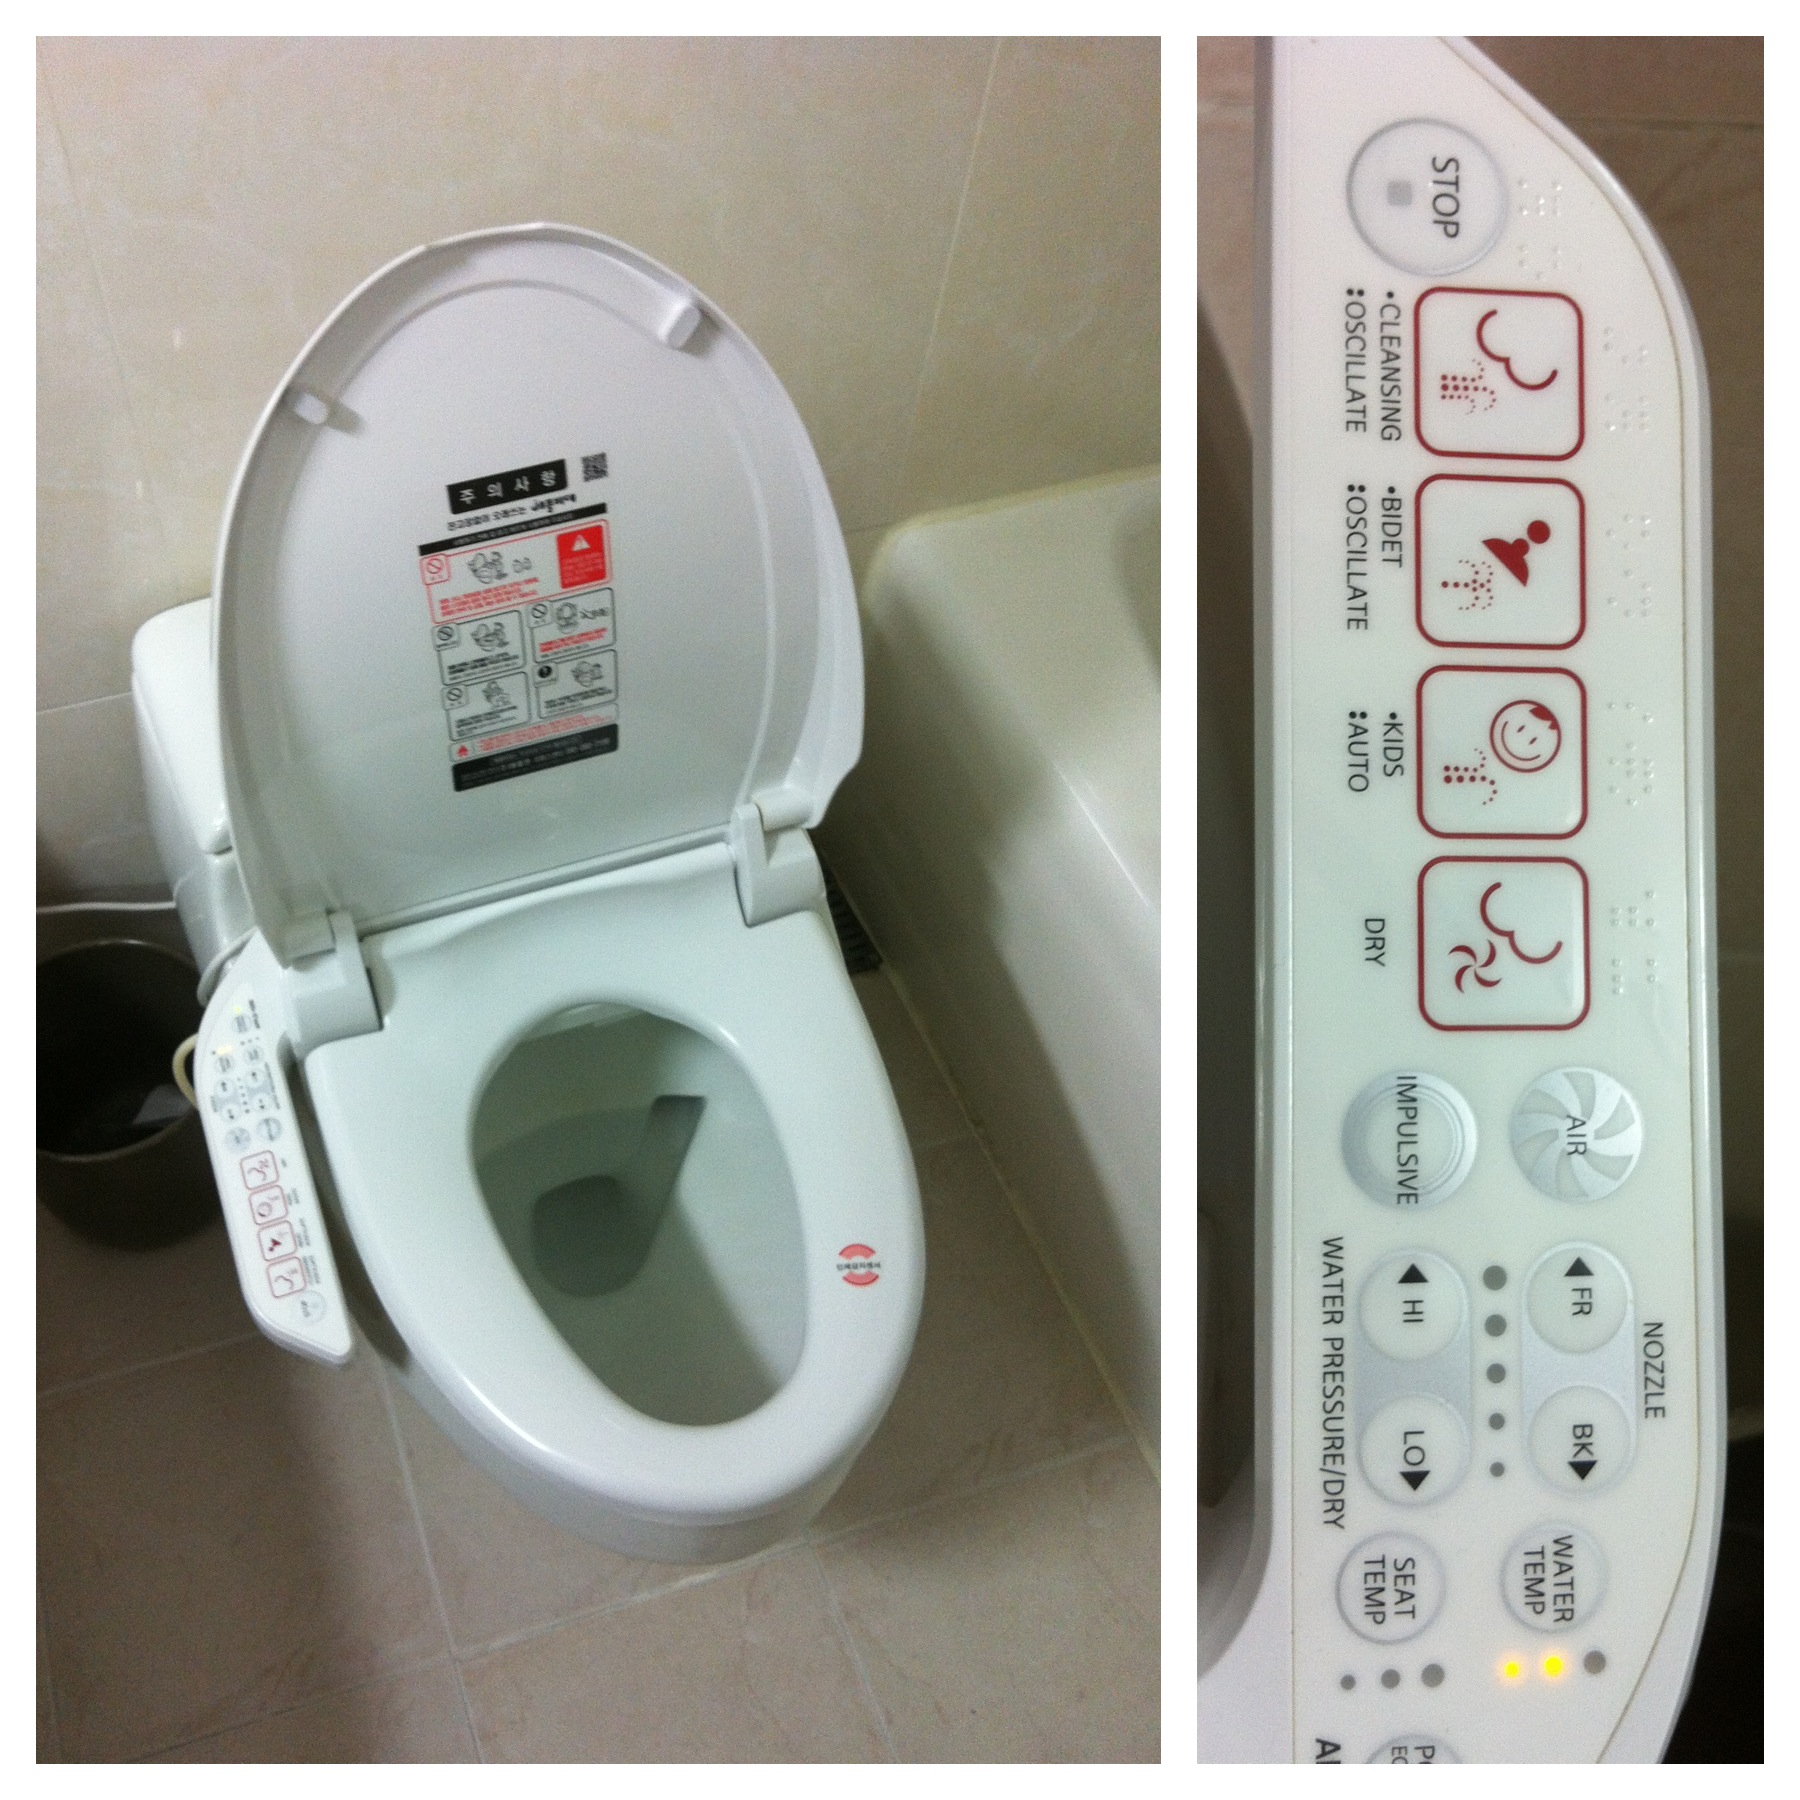 Korean Toilet Hilary Grist Erofound